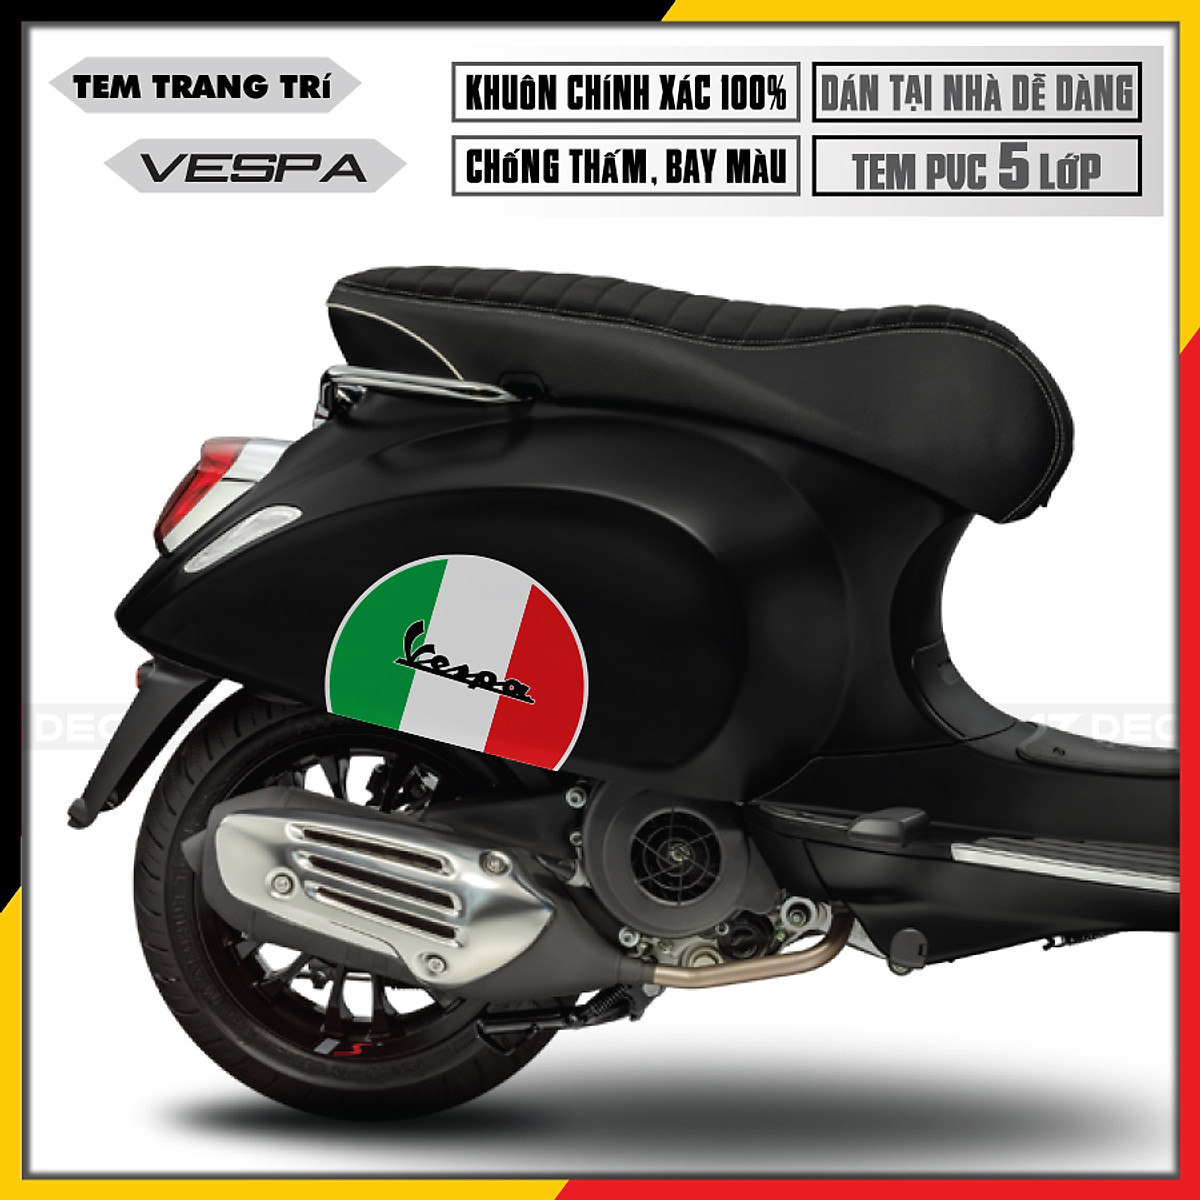 Vespa, chiếc xe biểu tượng của Ý luôn được yêu thích bởi sự độc đáo và đẳng cấp của nó. Và năm 2024, Vespa lại tiếp tục gây sốt khi được trang trí với tem xe cờ Italia đầy phóng khoáng. Hãy cùng chiêm ngưỡng những chiếc Vespa đầy cá tính và những mẫu tem xe cờ Italia tuyệt đẹp!